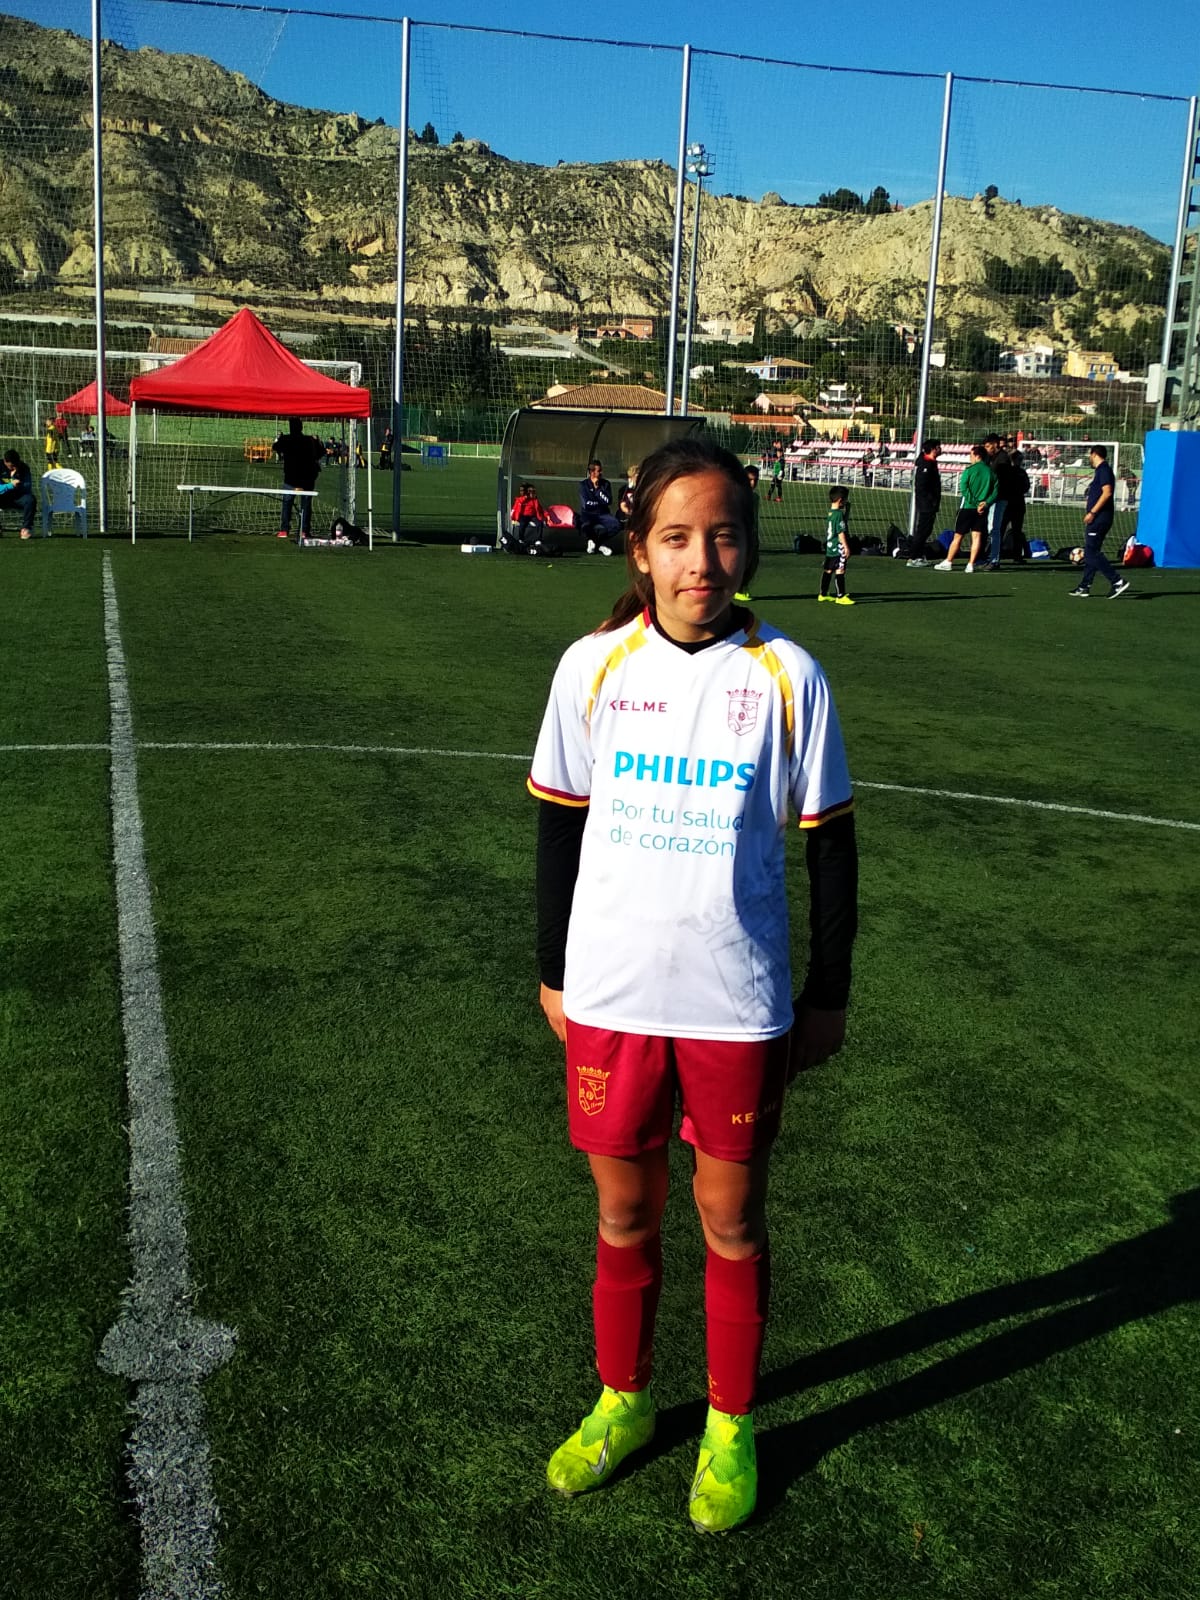 La futbolista María Tomás de la Escuela Municipal, participa en una jornada regional de la Federación